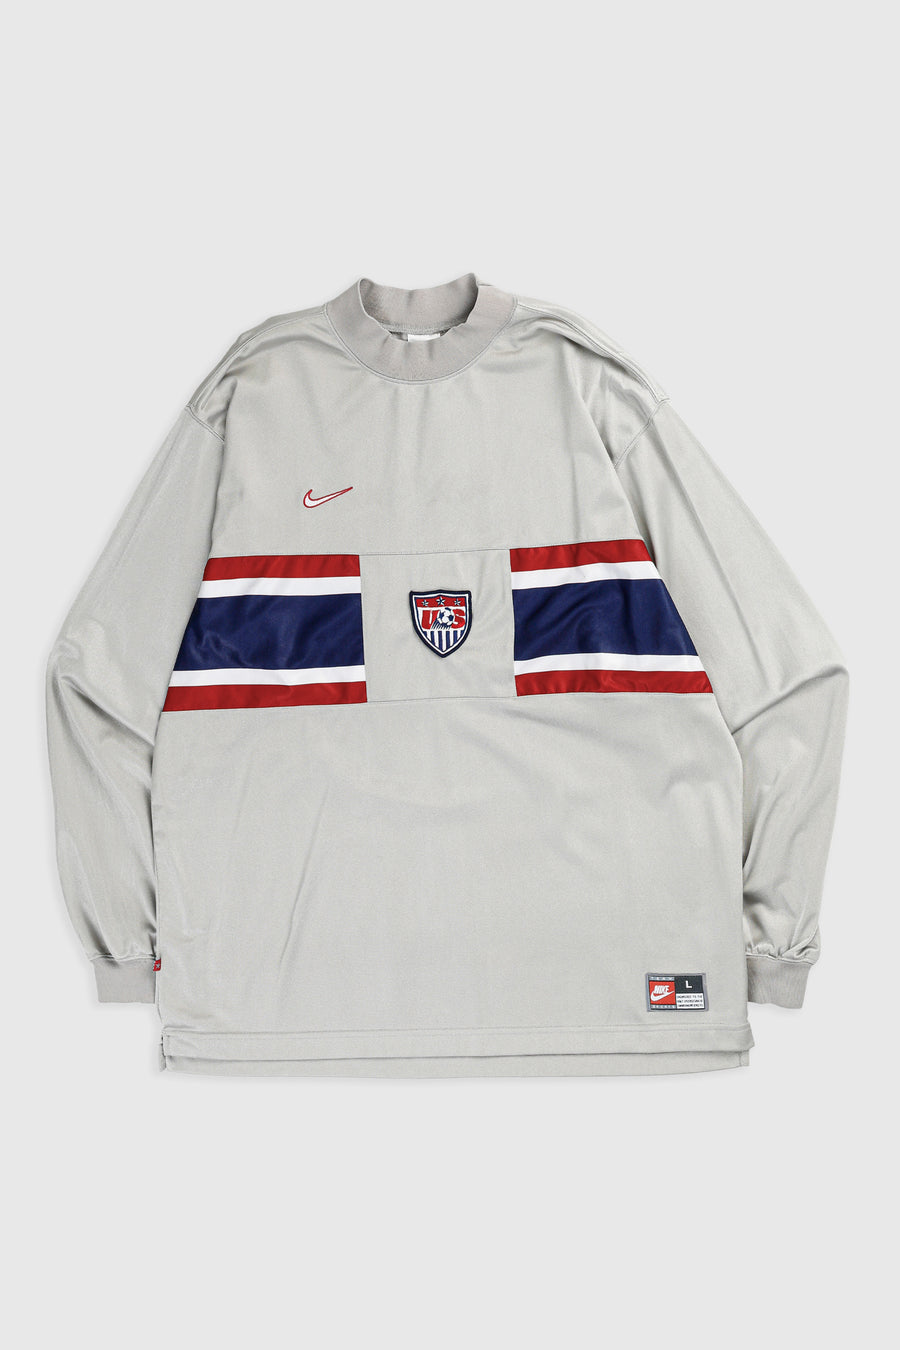 Vintage USA Longsleeve Soccer Jersey - L